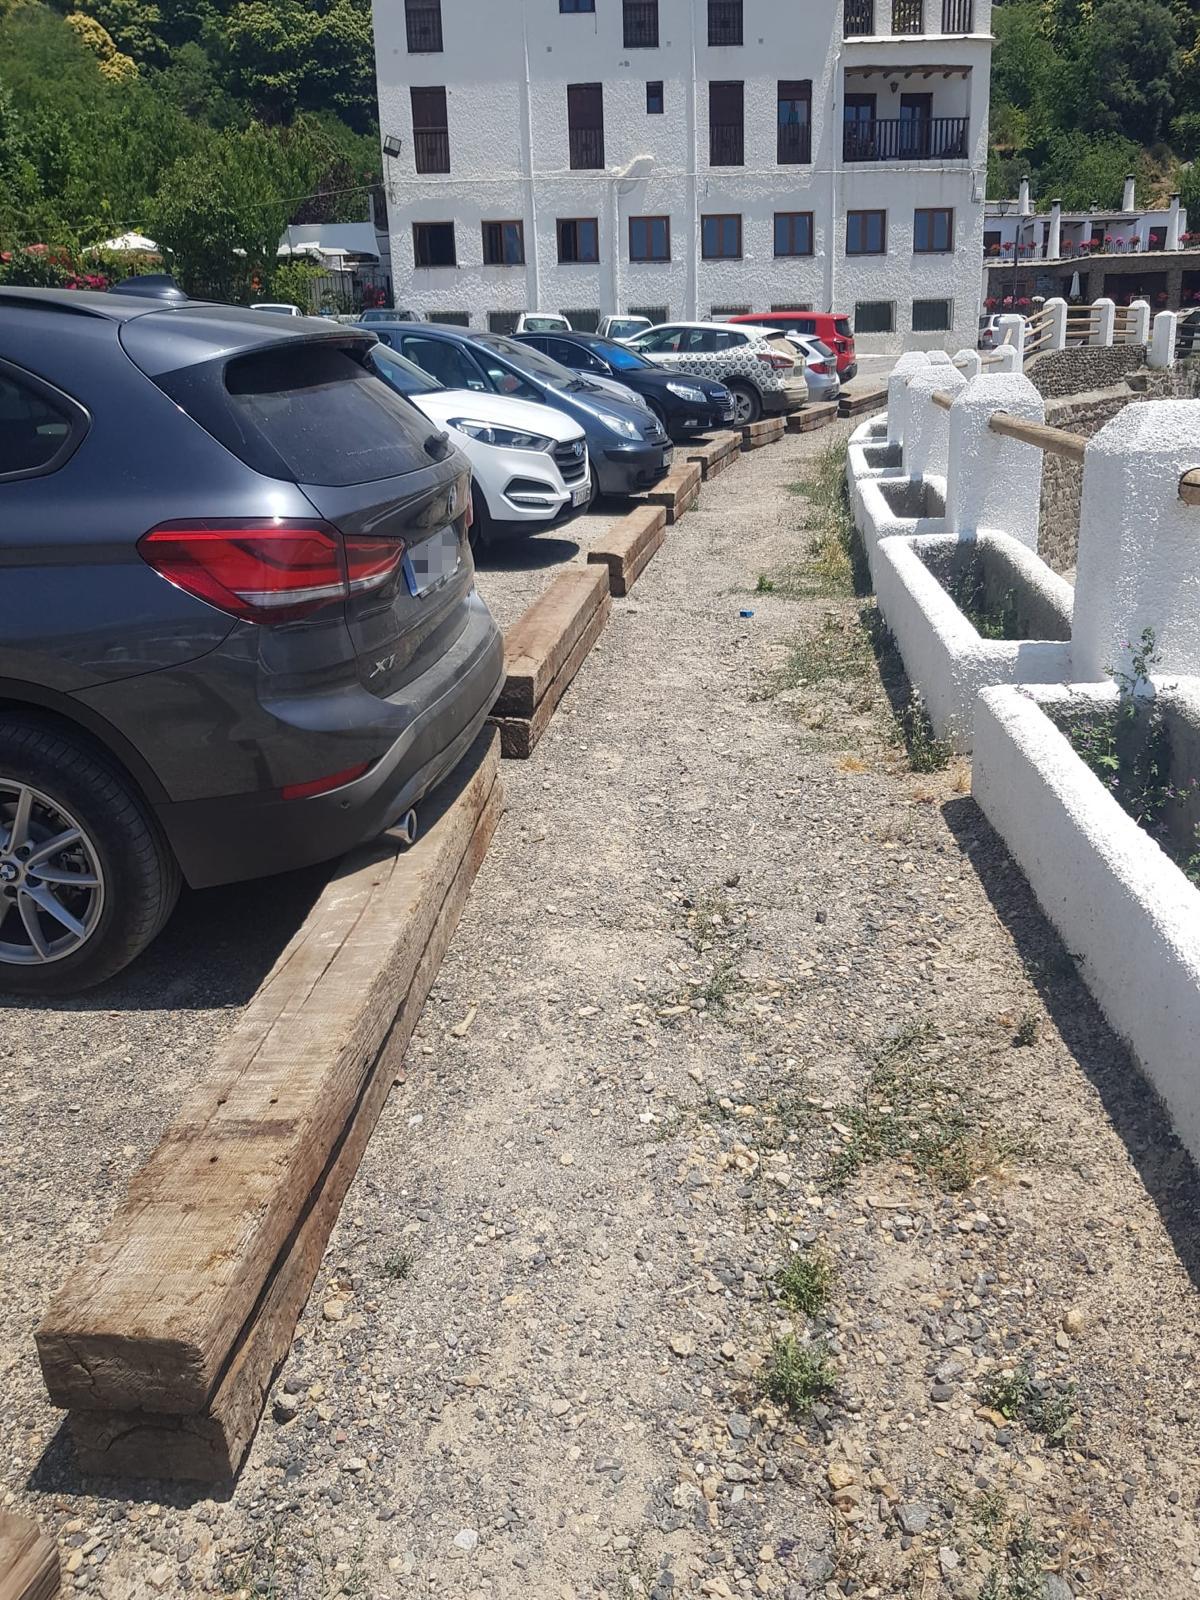 El PP pide a la alcaldesa de Bubión que retire las traviesas de madera del aparcamiento municipal por el “riesgo” que suponen 